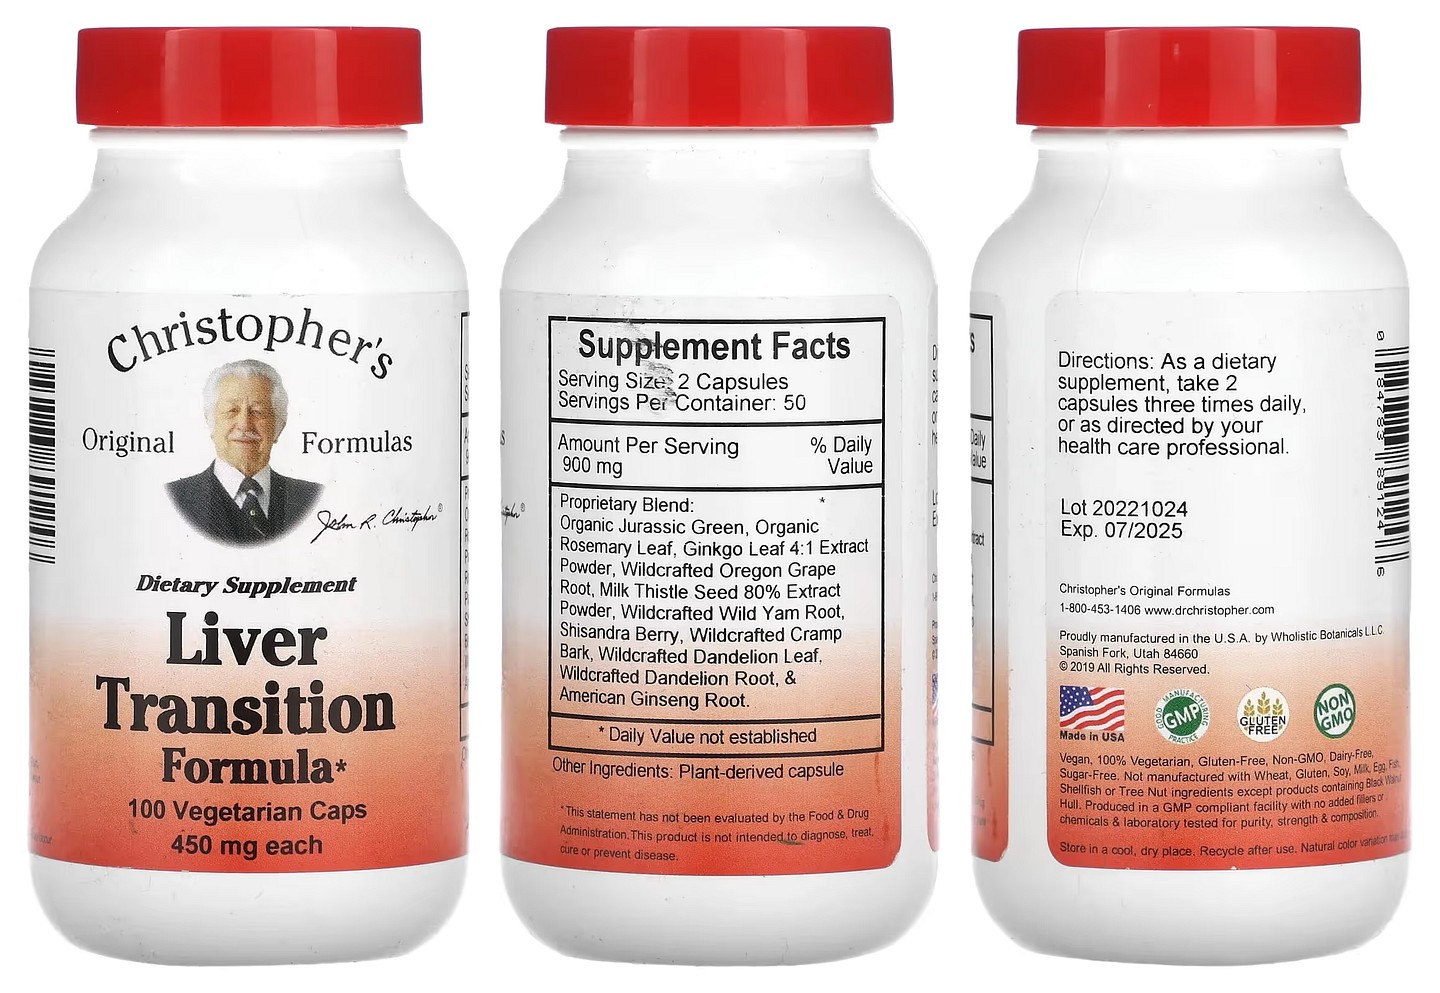 Dr. Christopher's, Liver Transition Formula packaging